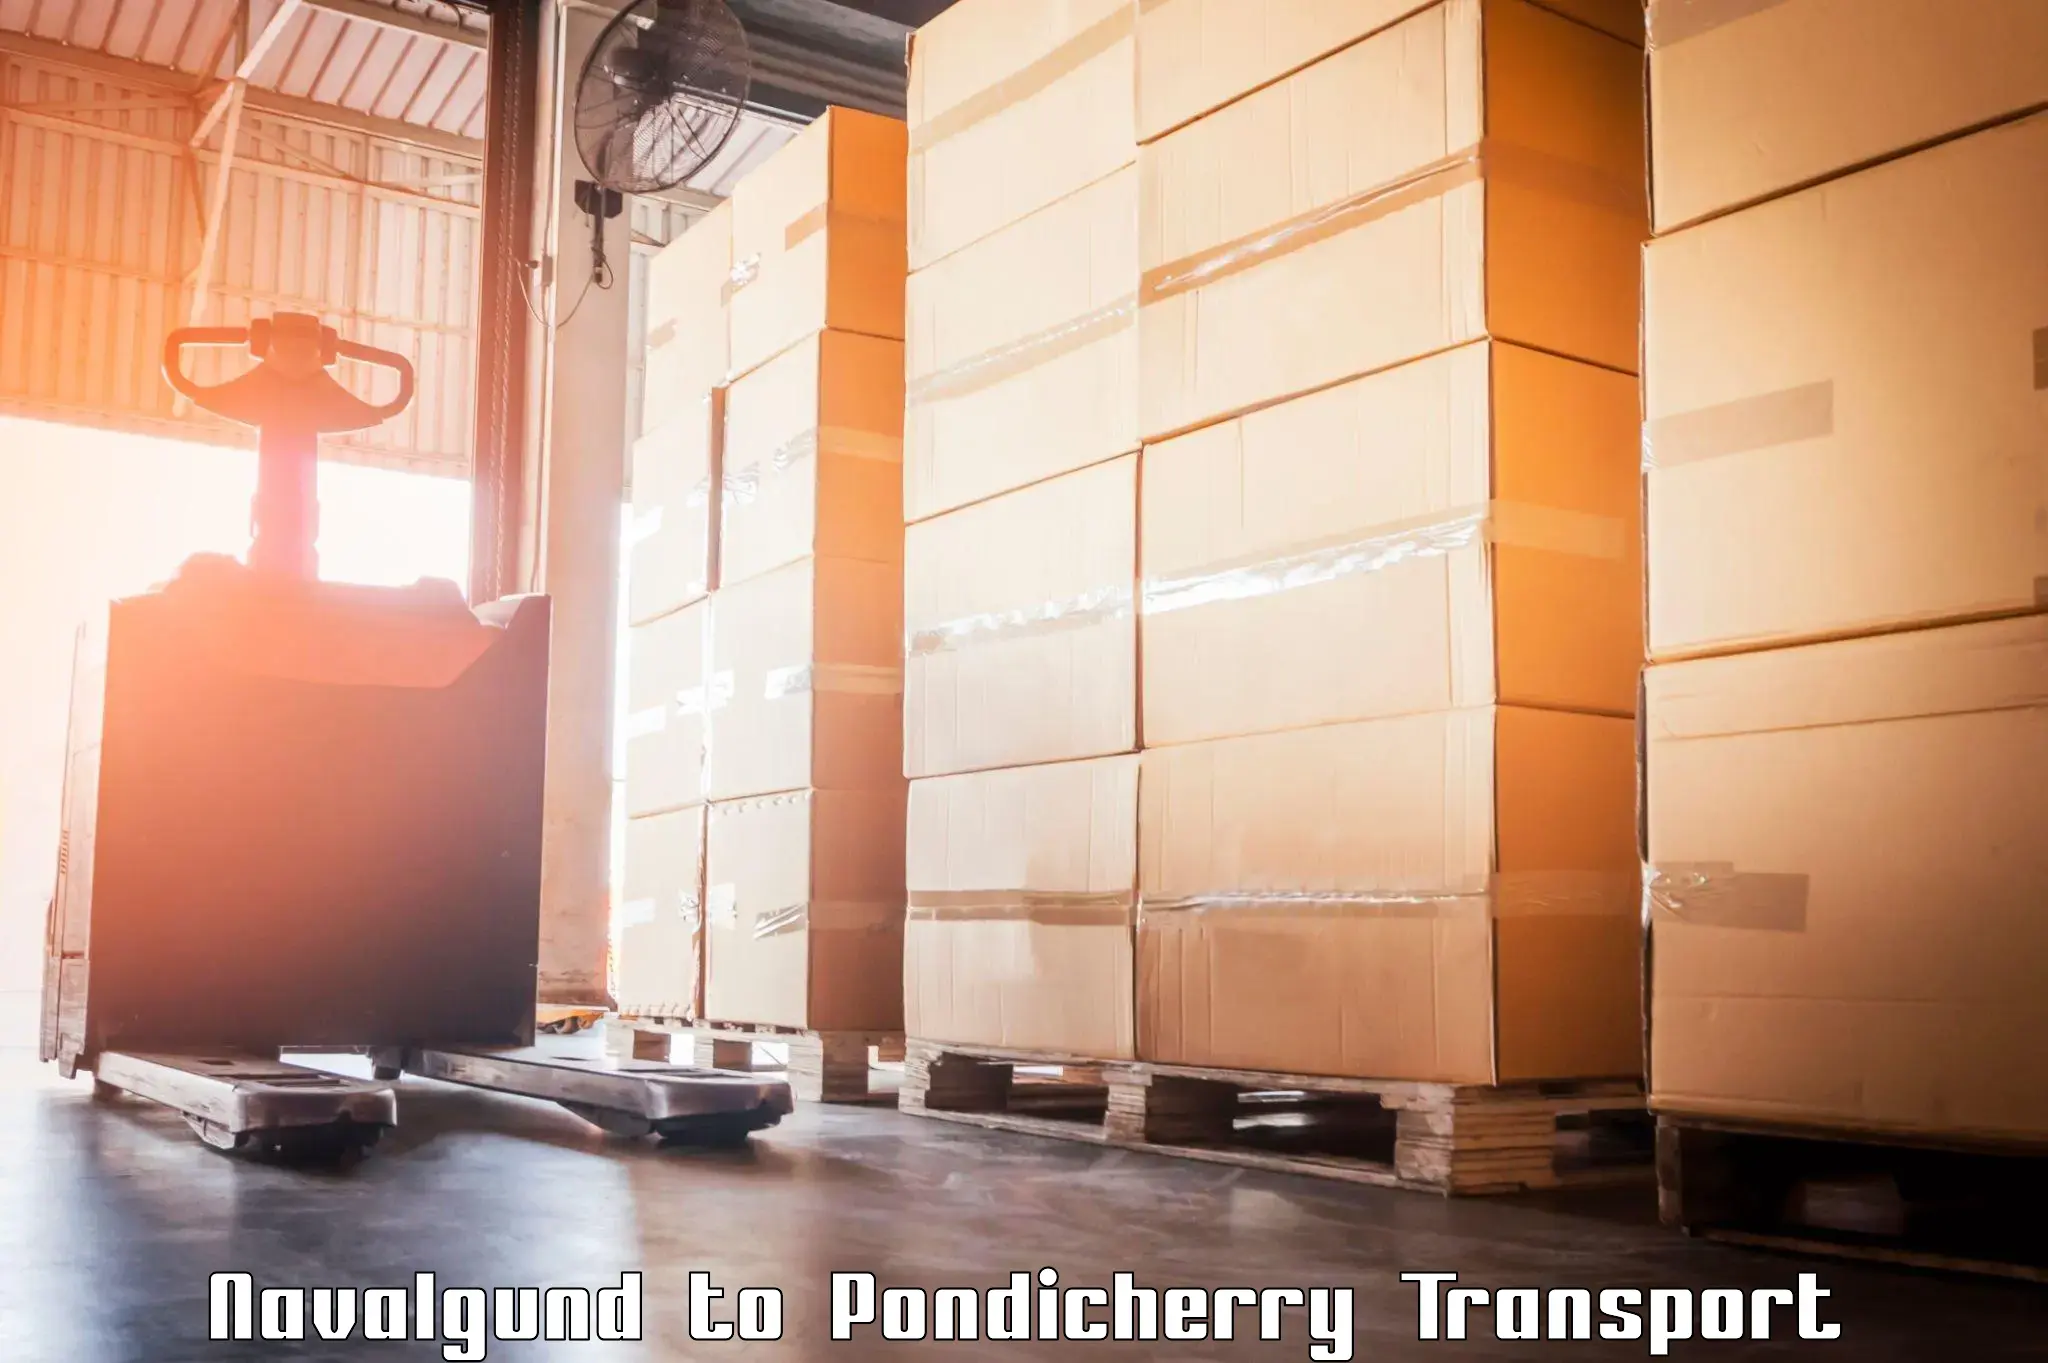 Commercial transport service Navalgund to Pondicherry